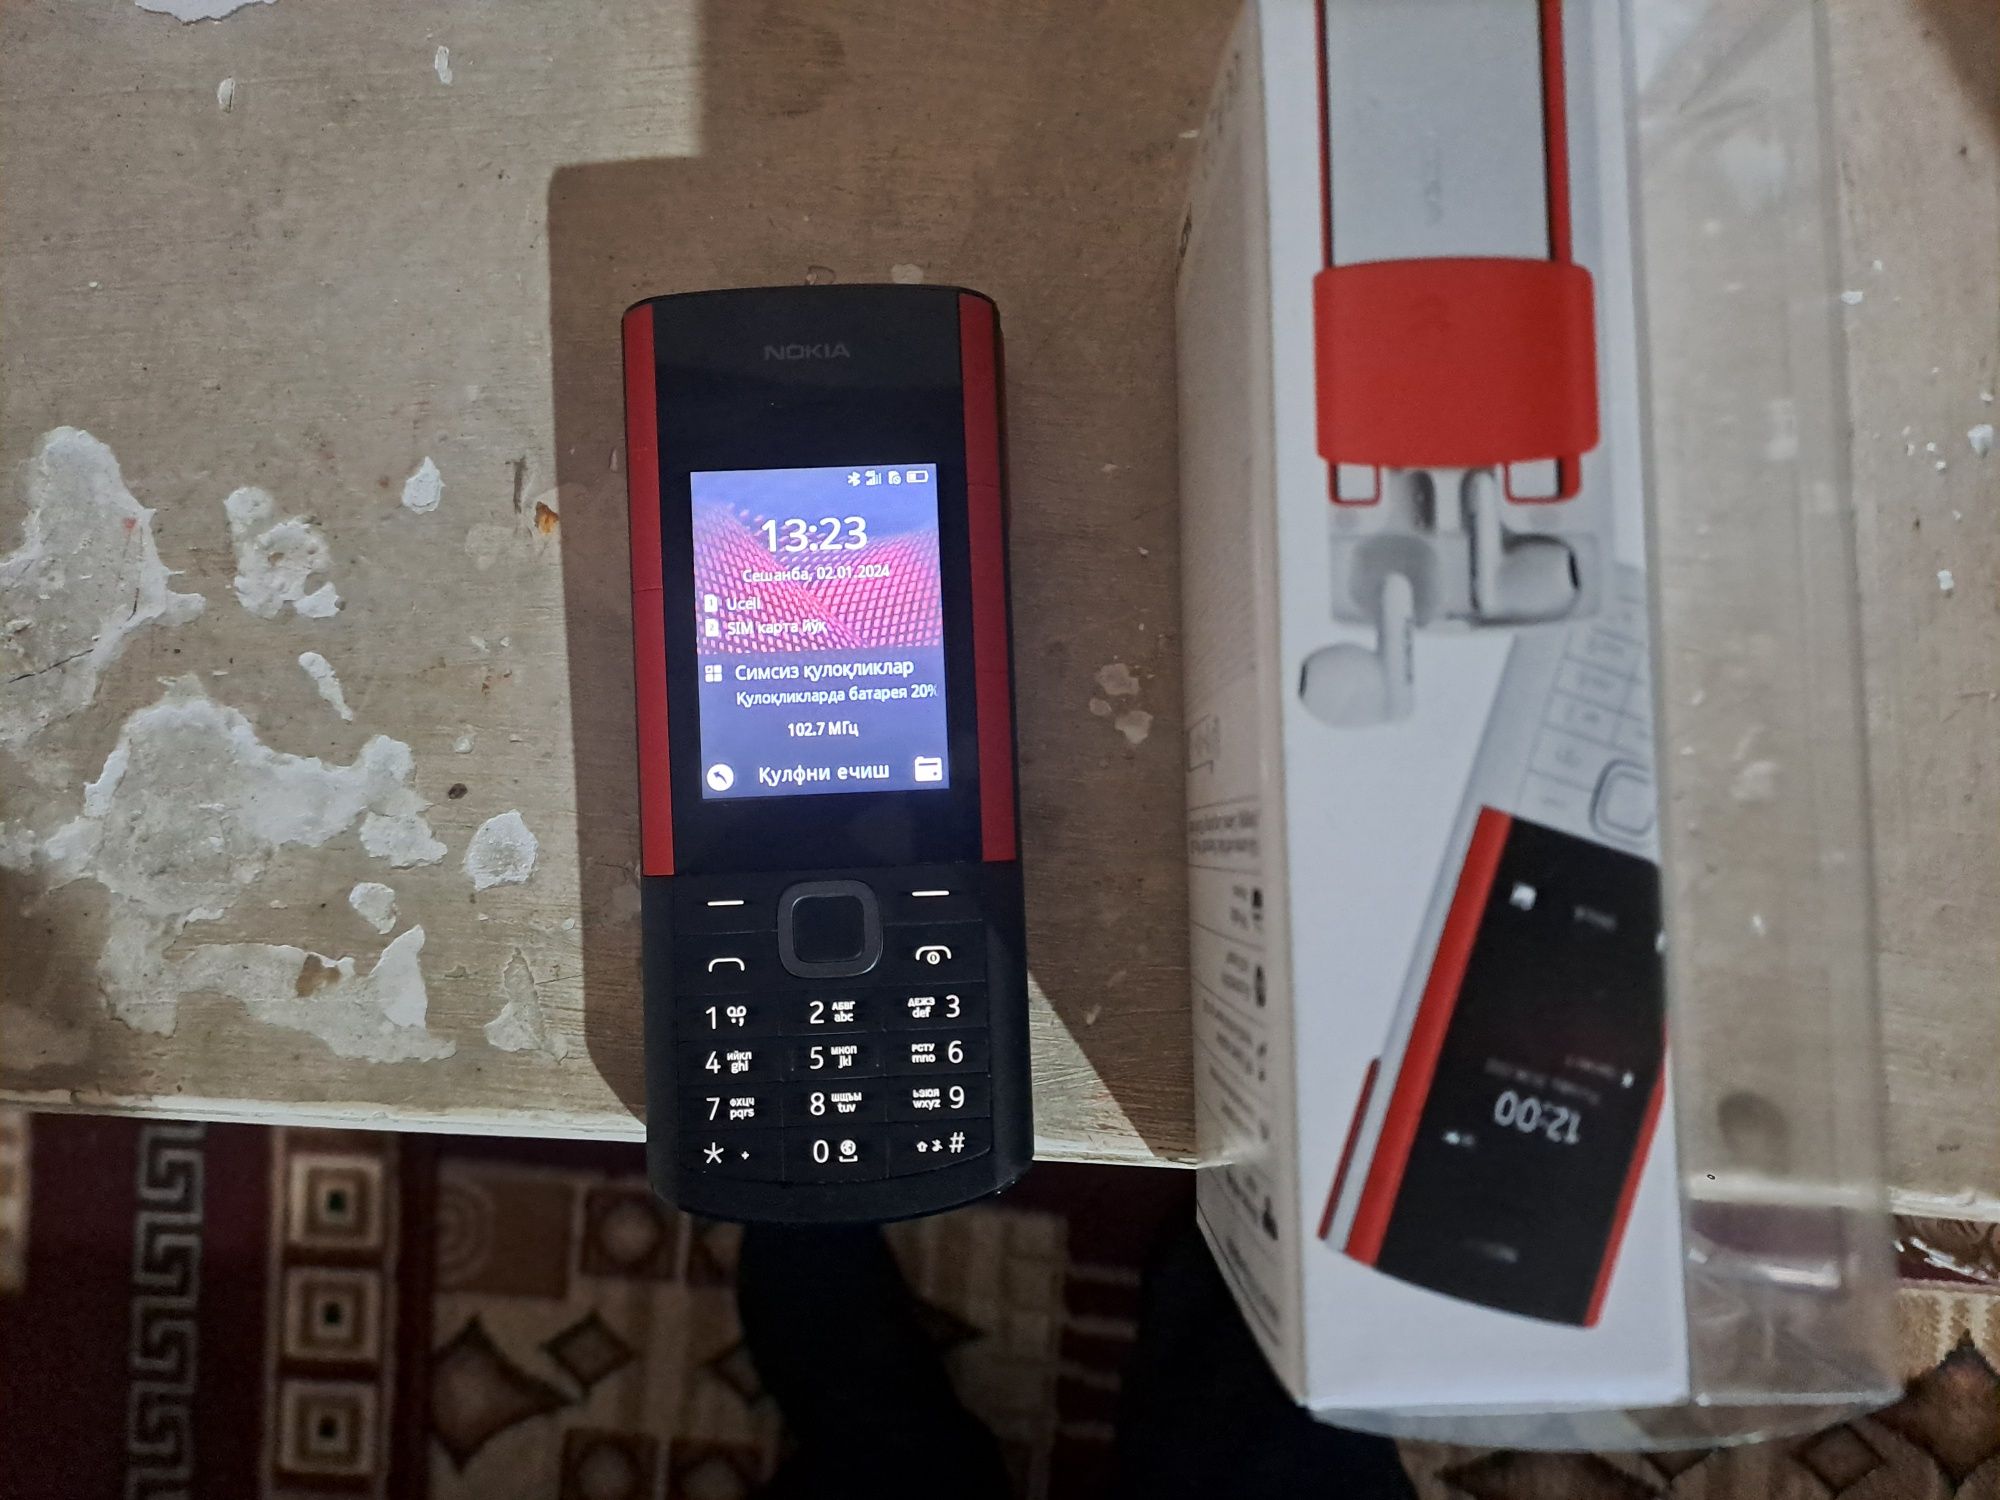 Nokia 5710 yangi